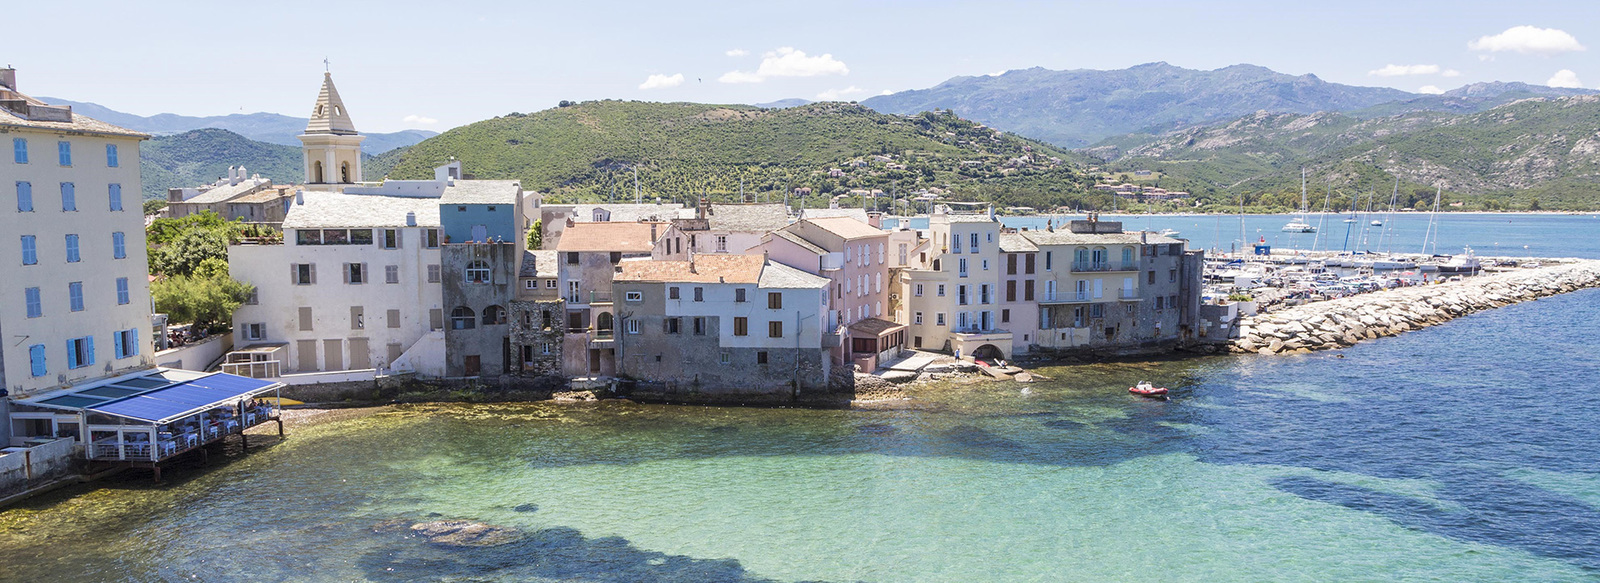 Immerso tra i vigneti in Corsica